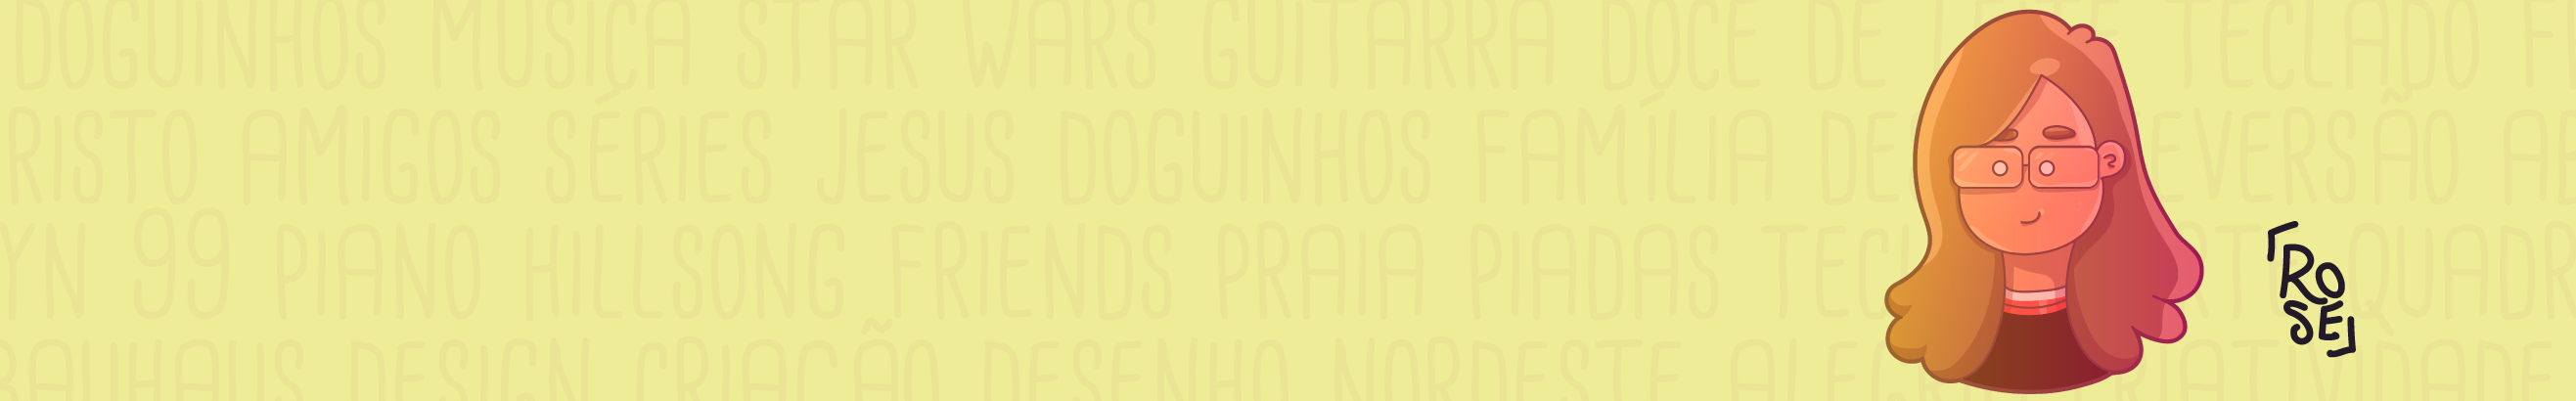 Rosemária Nascimento's profile banner